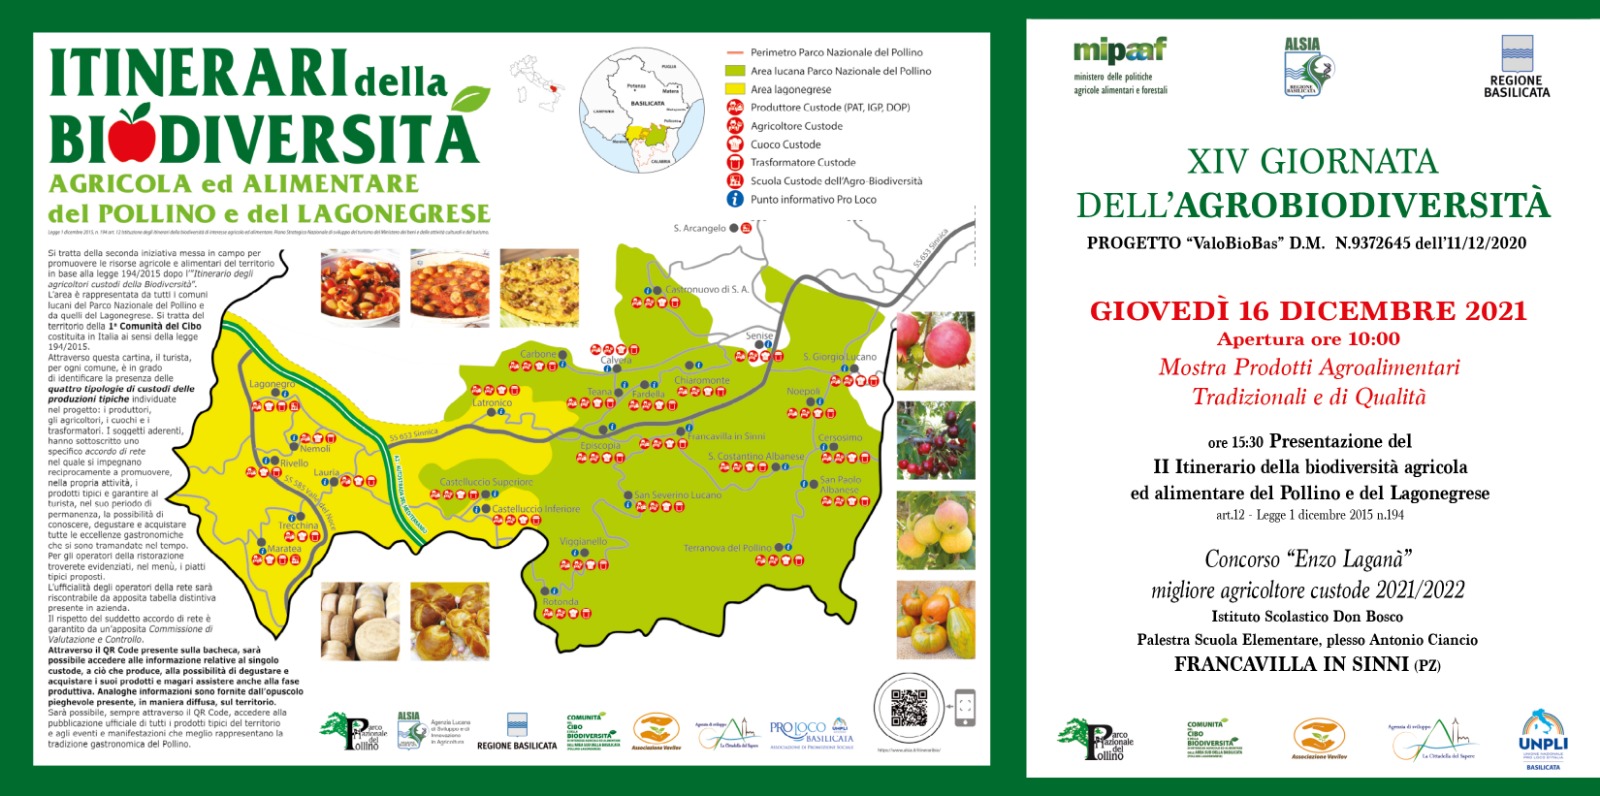 A Francavilla in Sinni (PZ) il 16 la XIV Giornata della Agrobiodiversità della Basilicata